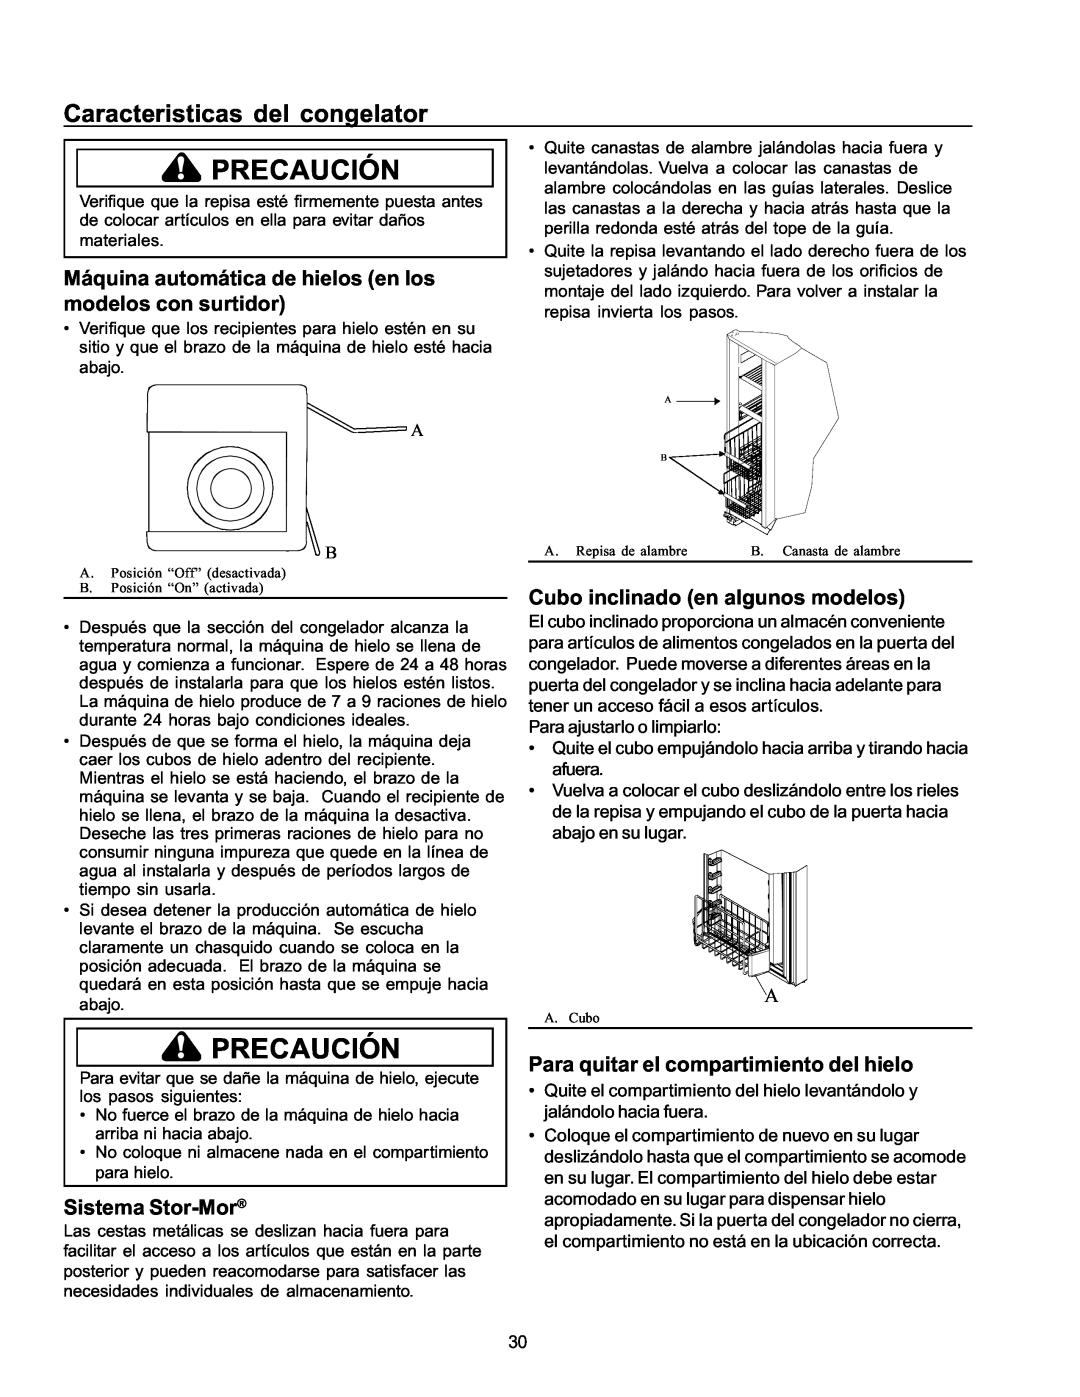 Amana ARS2666AW Caracteristicas del congelator, Máquina automática de hielos en los modelos con surtidor, Sistema Stor-Mor 